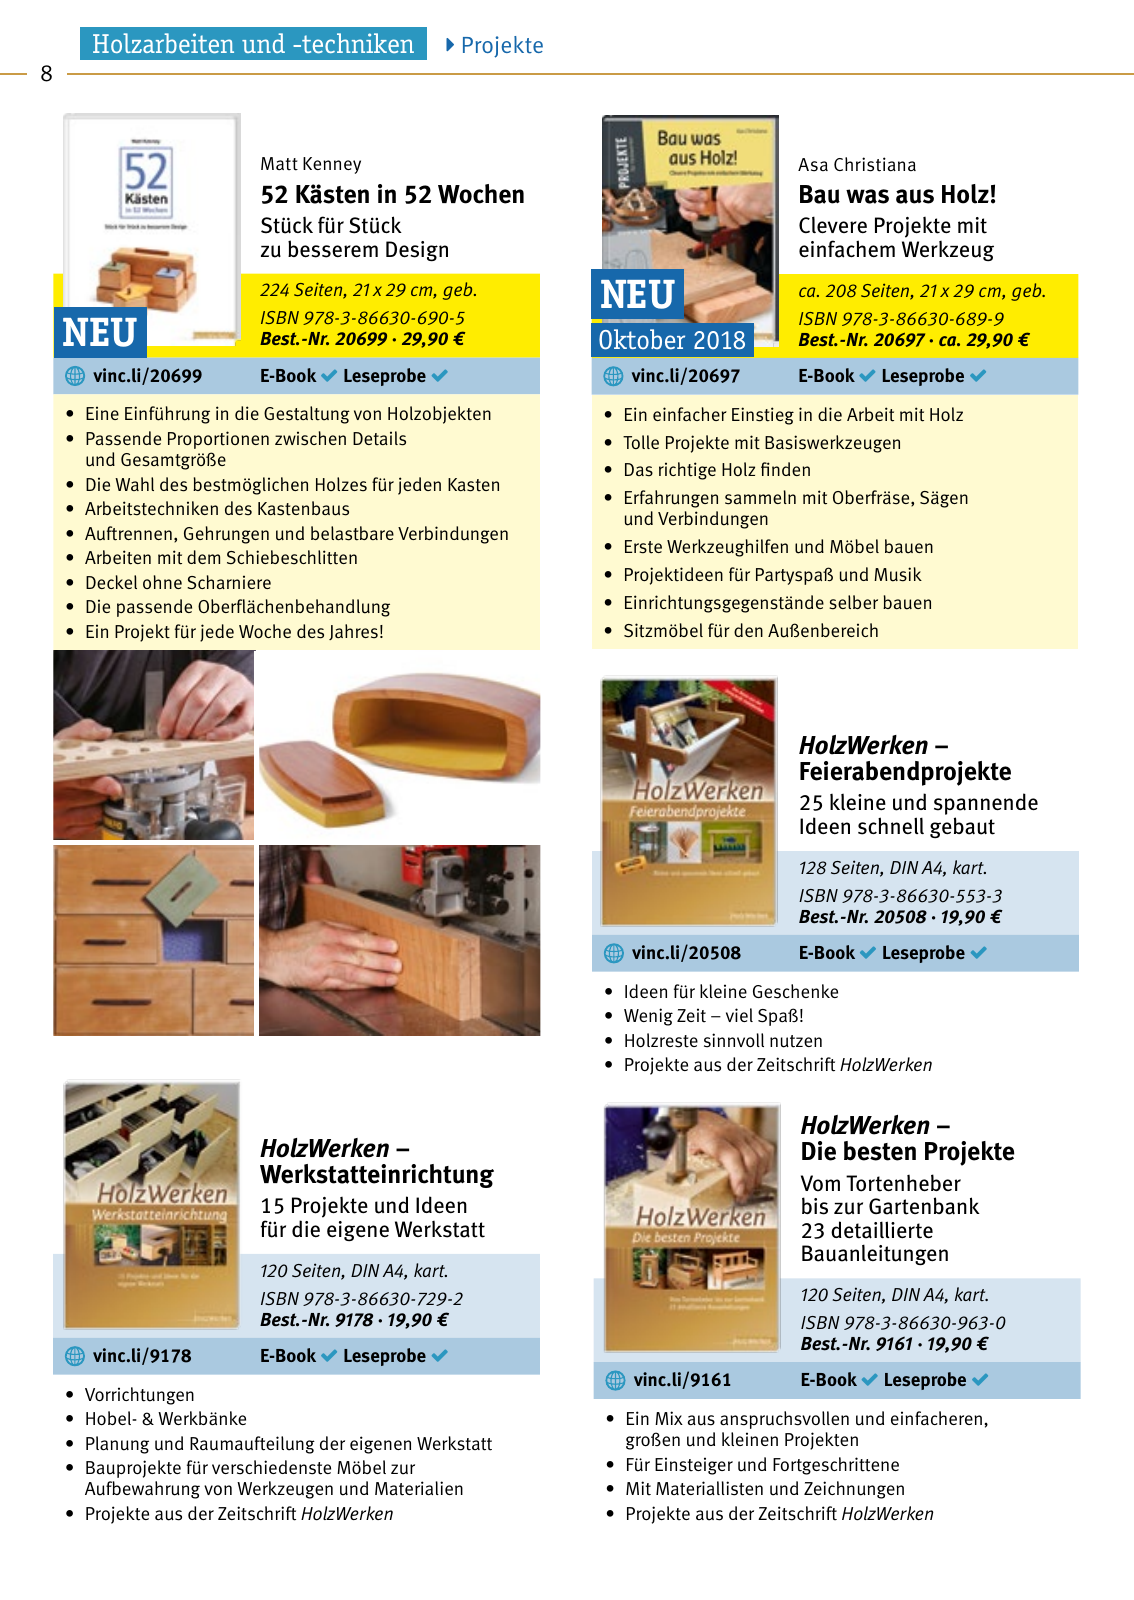 Vorschau HolzWerken Katalog 2019 Seite 8